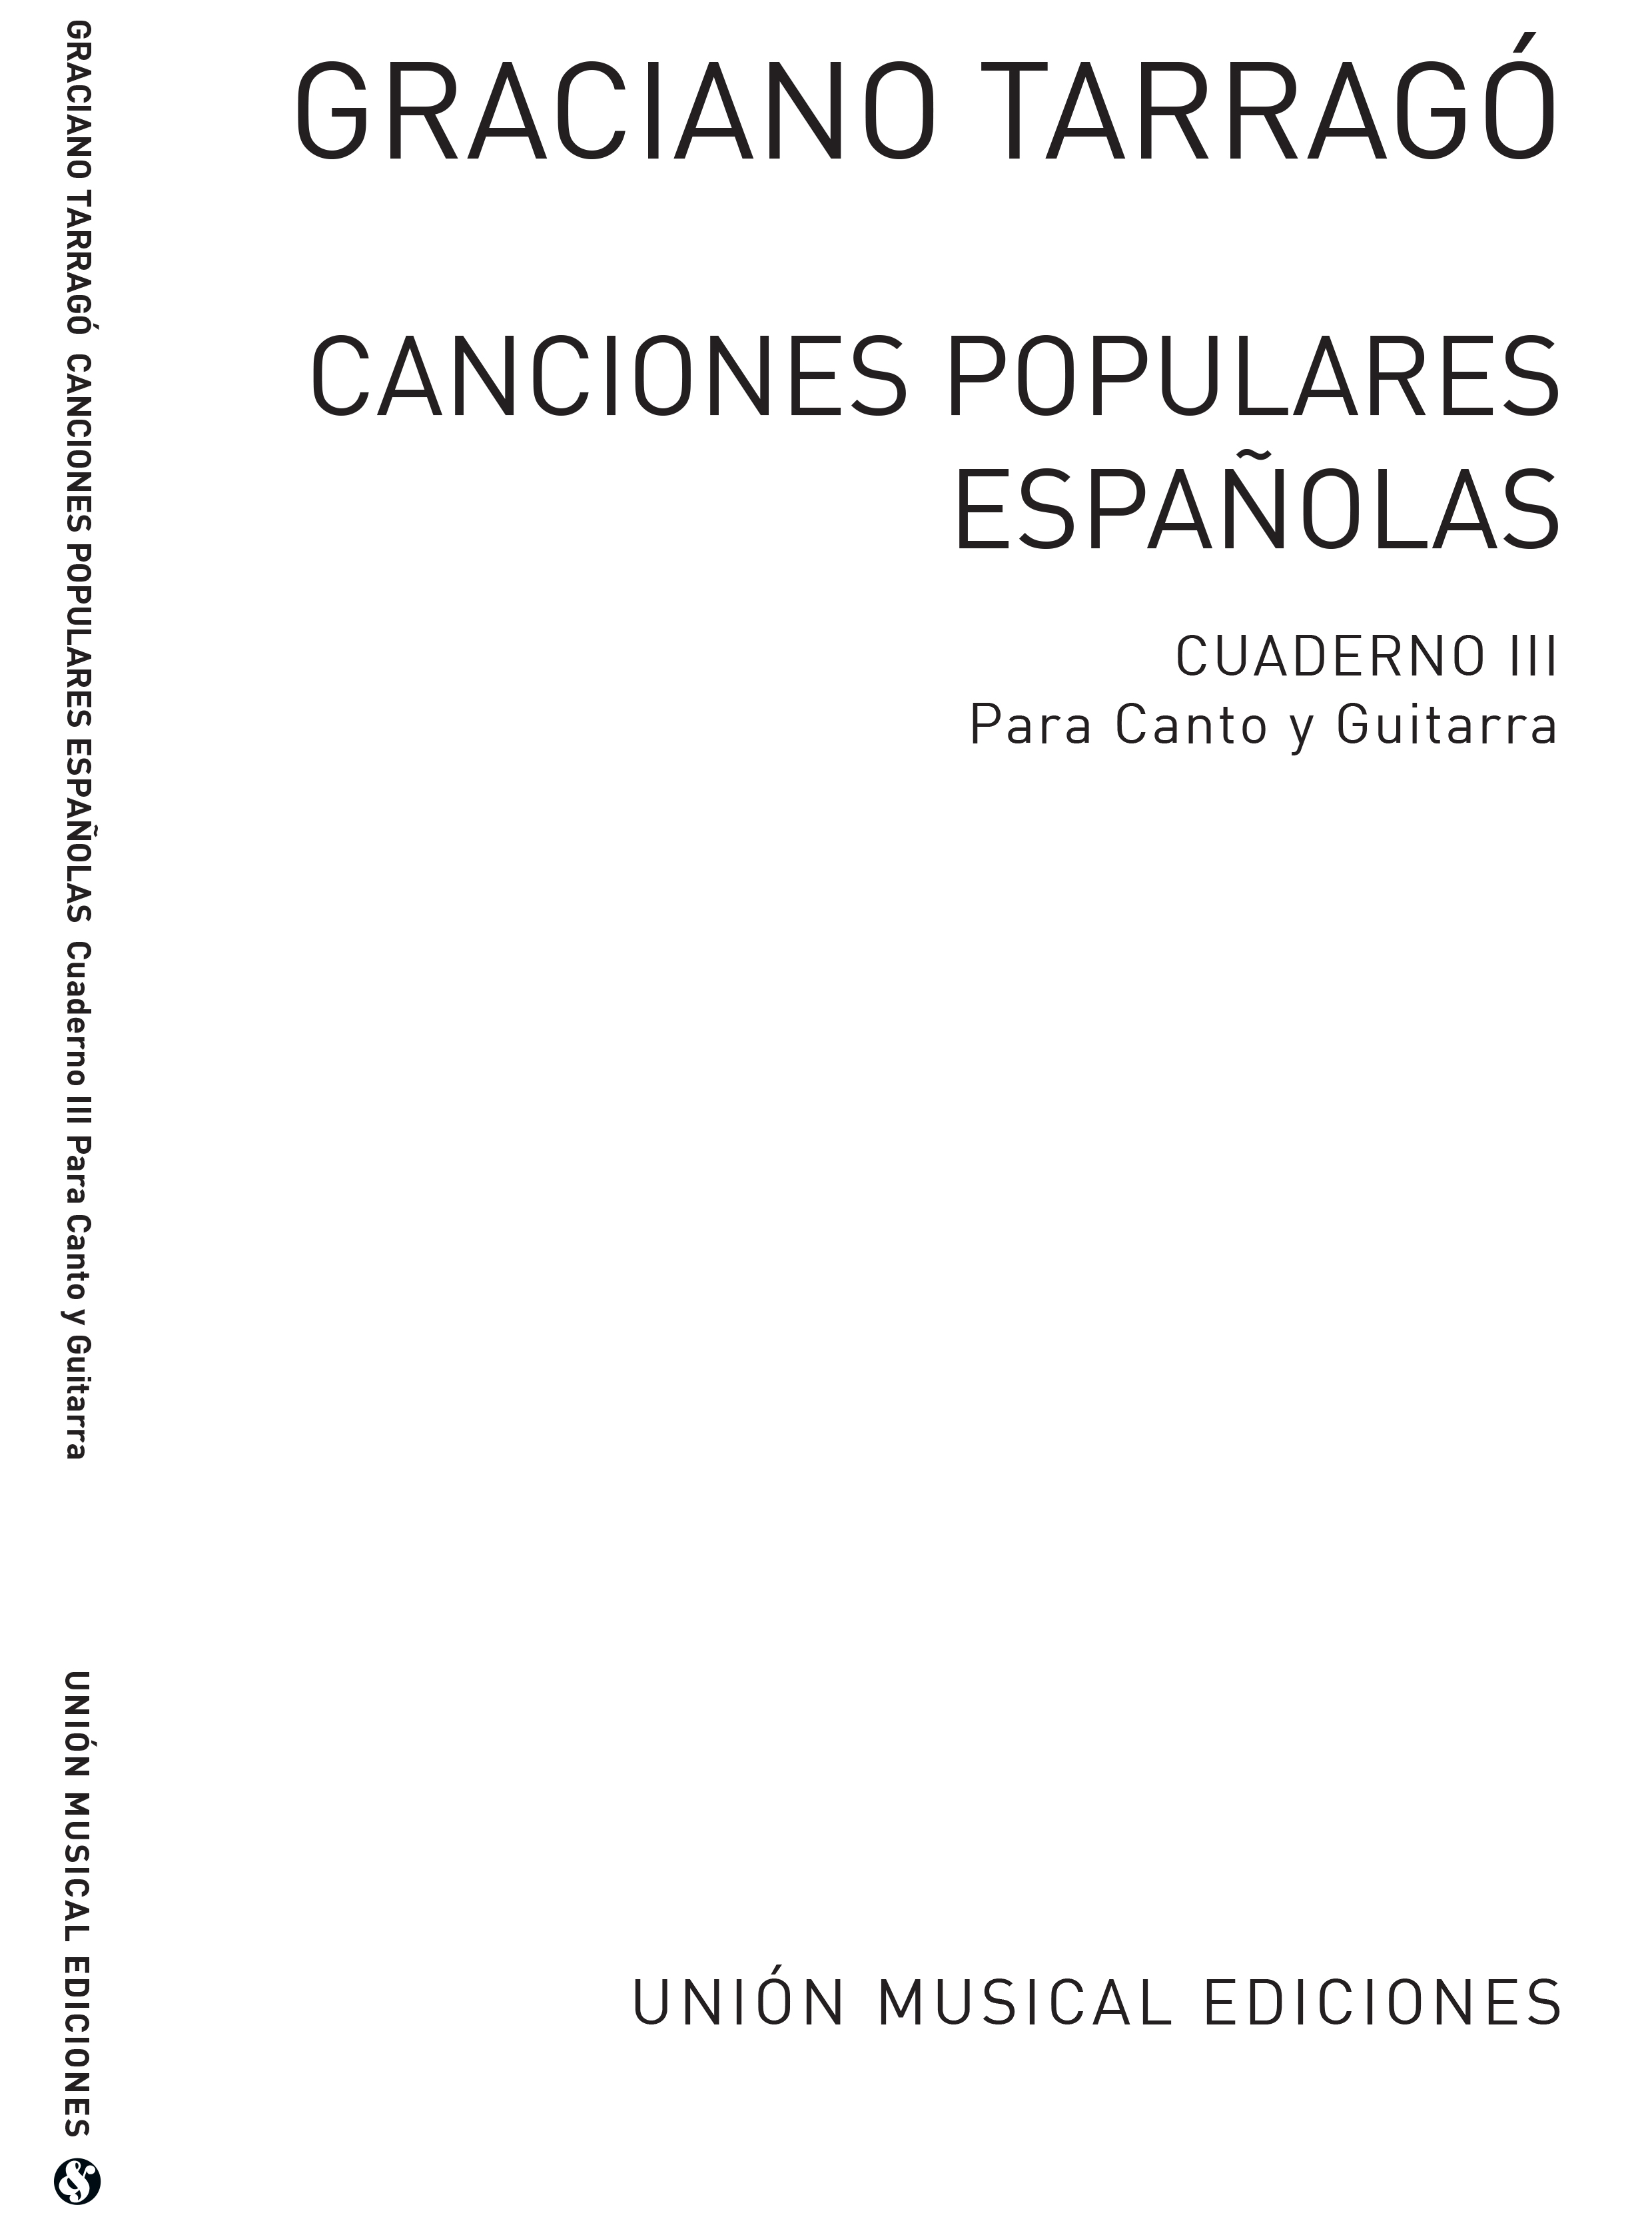 Graciano Tarrag: Canciones Populares Espanolas Cuaderno Iii: Voice: Score